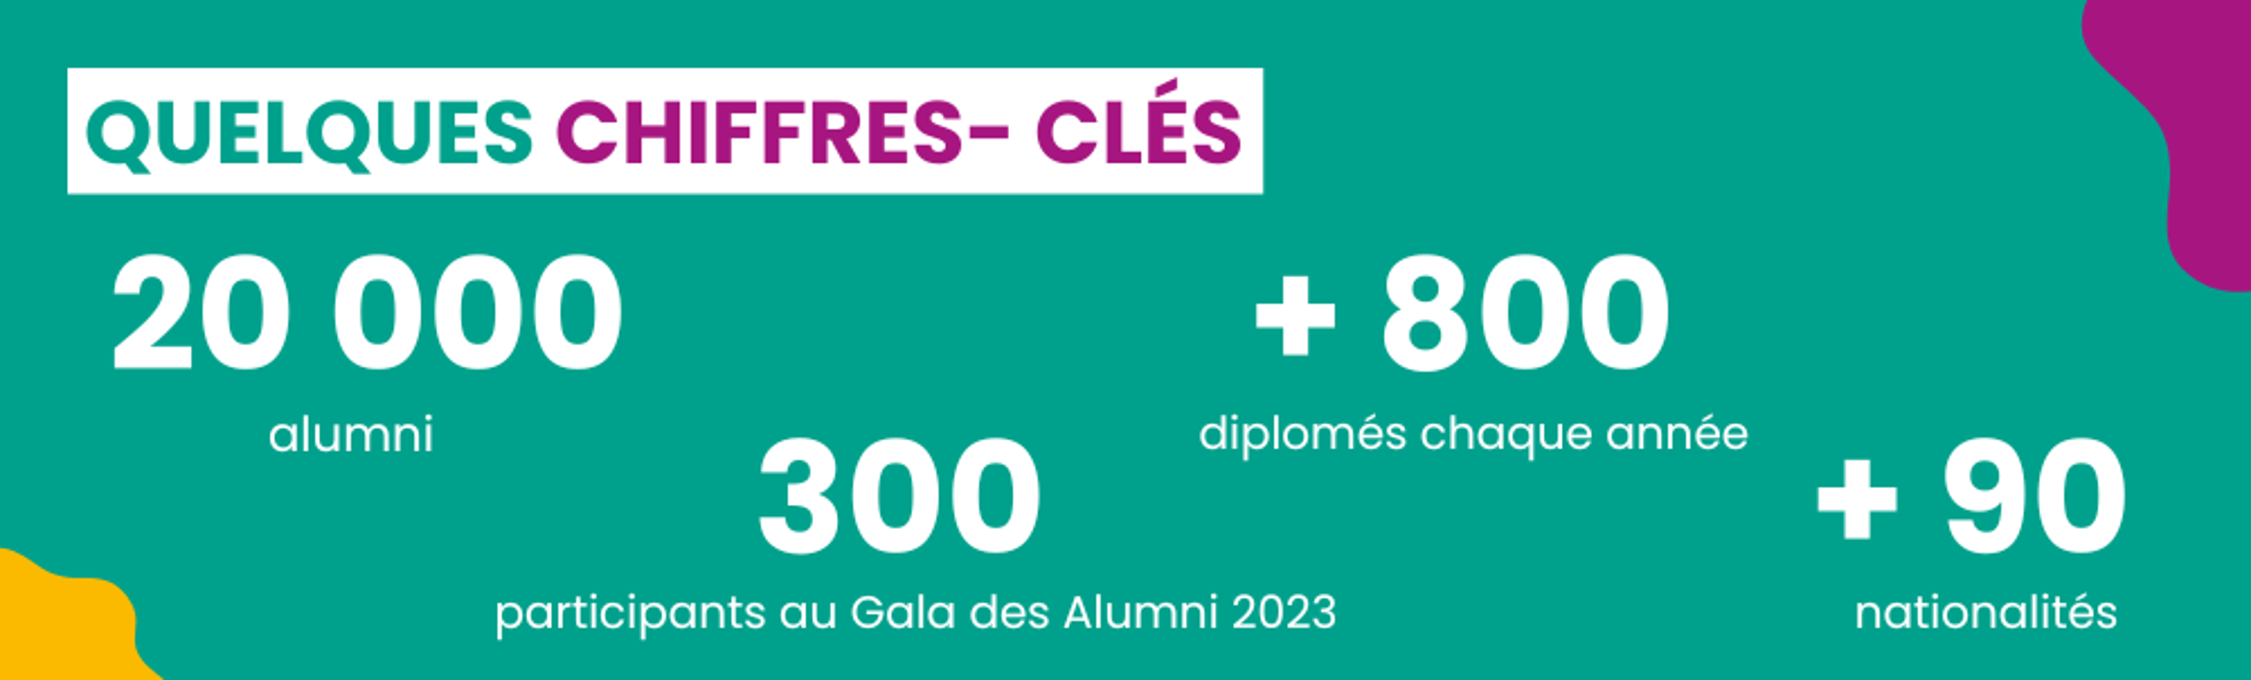 Quelques chiffres-clés : 20000 alumni, 300 participants au gala des alumnis 2023, plus de 800 diplômés chaque année, plus de 90 nationalités